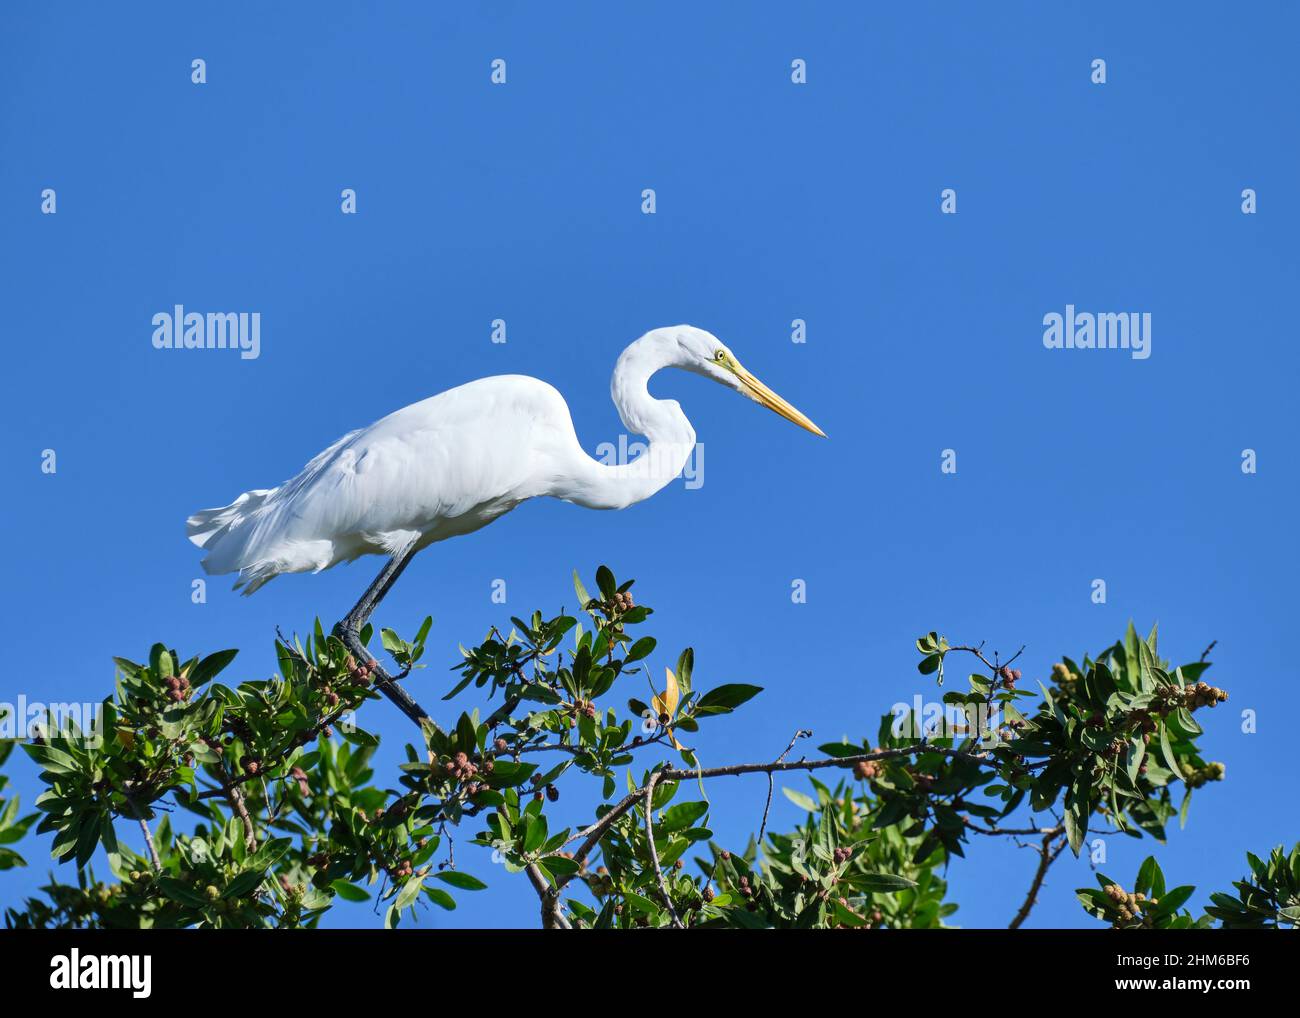 Un magnifique Grand Egret blanc enneigé est perché au sommet d'un arbre avec un fond ciel bleu vif le long de la plage de Playa Potrero au Costa Rica. Banque D'Images